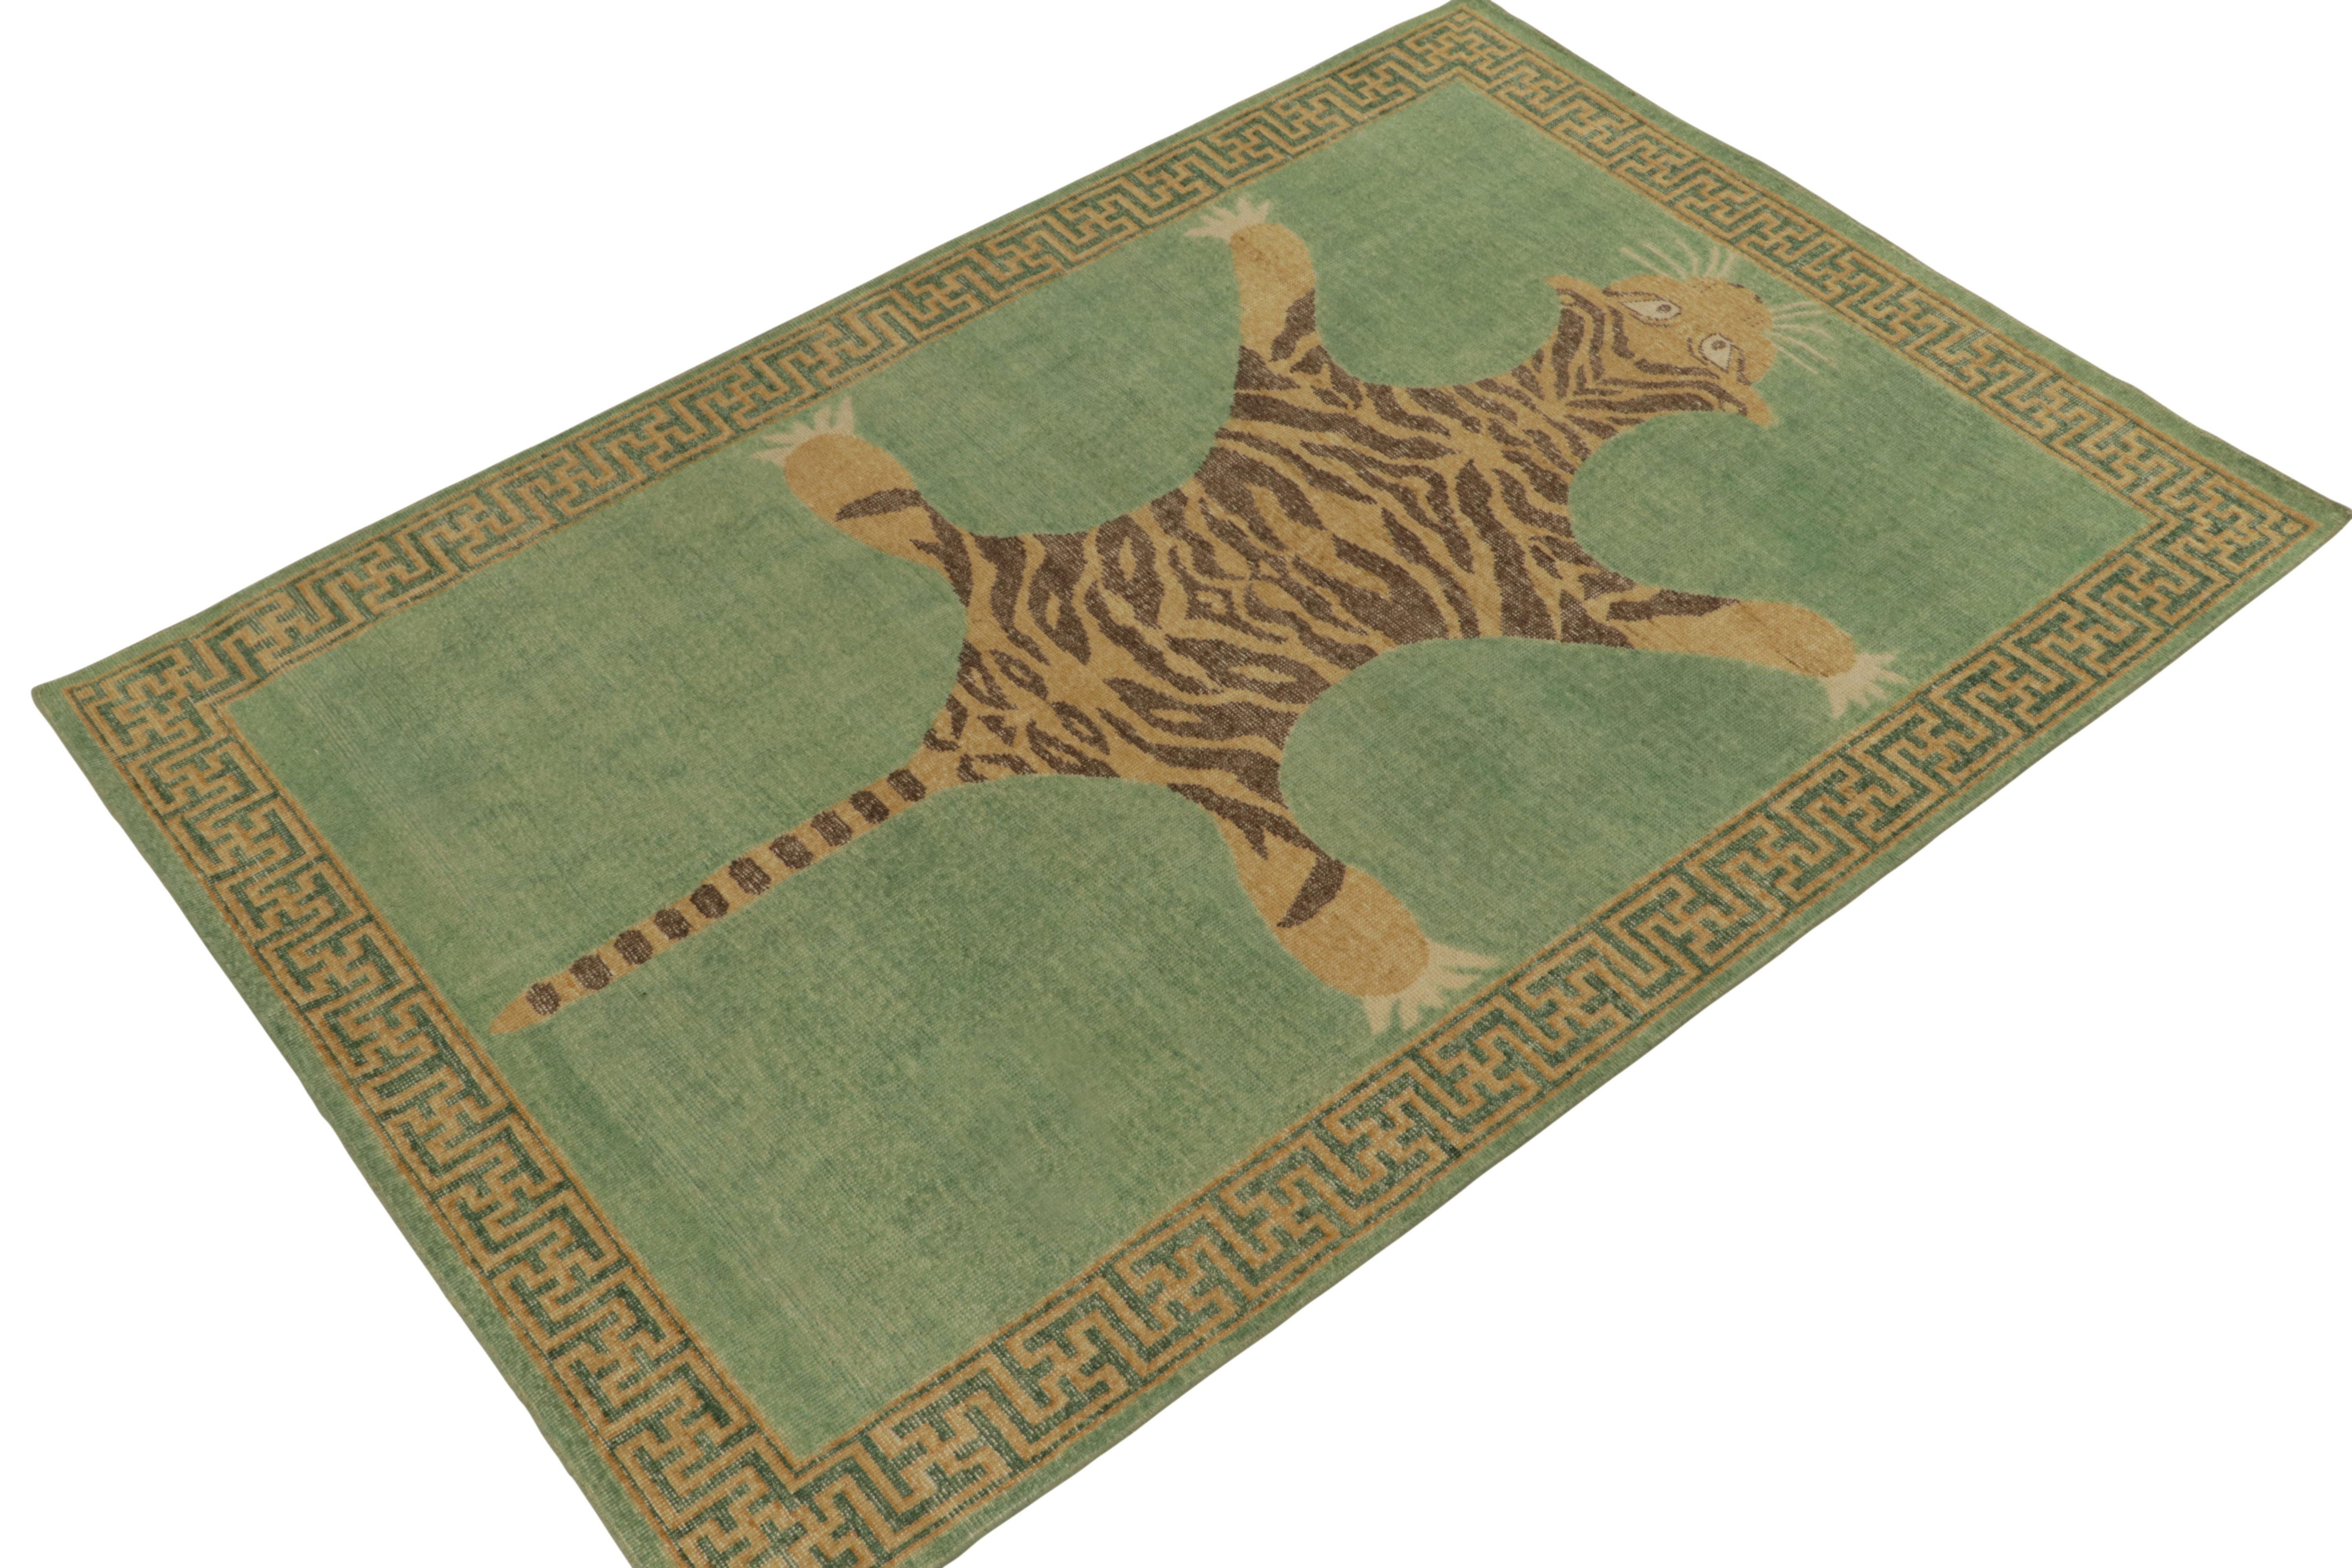 De la collection Homage de Rug & Kilim, une pièce de 6x9 en laine nouée à la main qui reprend le tapis en peau de tigre dans toute sa gloire. 

Sur le design : Cette pièce s'inspire d'anciens tapis indiens en peau de tigre à la présence royale et